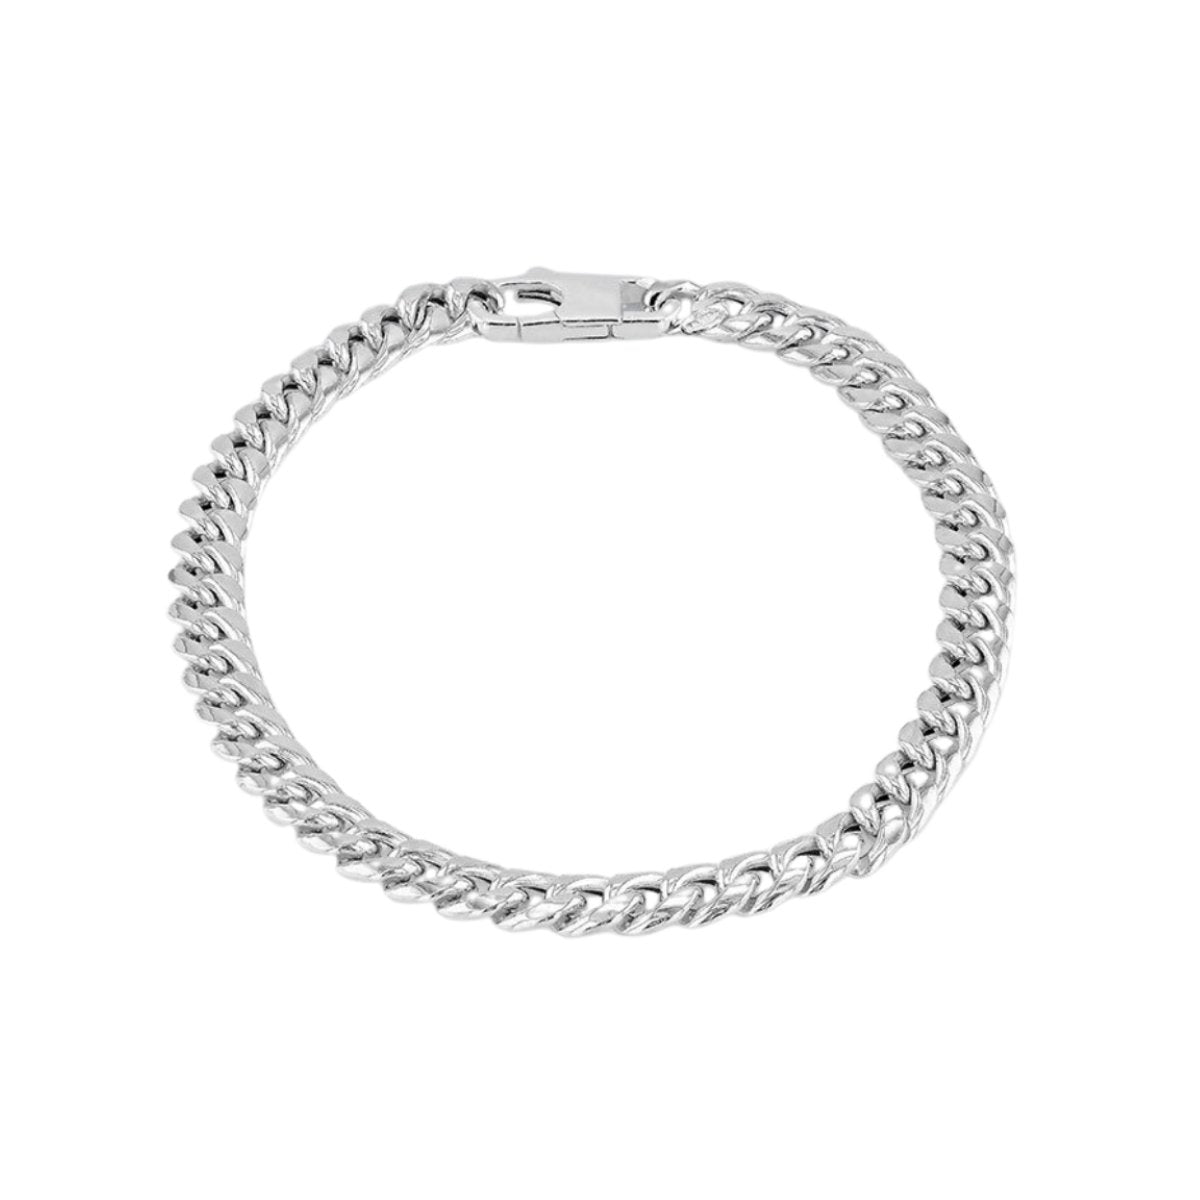 Elegant 925 Sterling Silver Rounded Curb Link Bracelet - 20 cm/8" Length - RubyJade